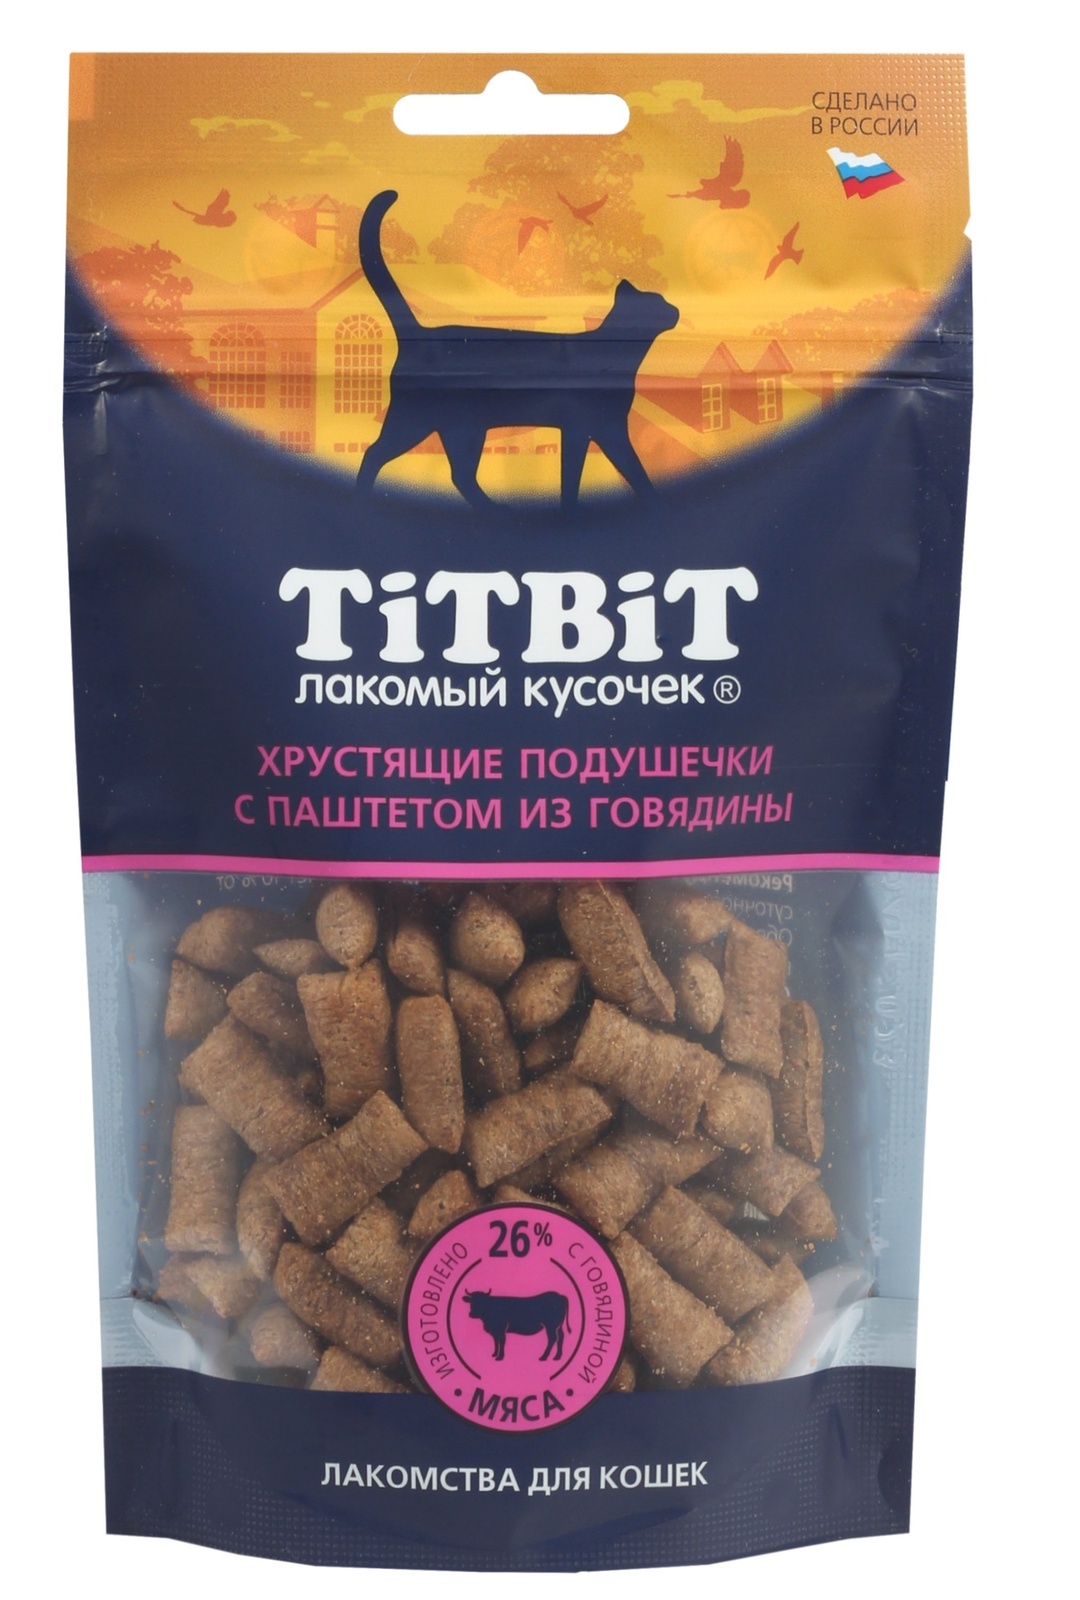 TiTBiT TiTBiT хрустящие подушечки для кошек с паштетом из говядины (60 г) titbit titbit хрустящие подушечки для кошек с говядиной для выведения шерсти 60 г